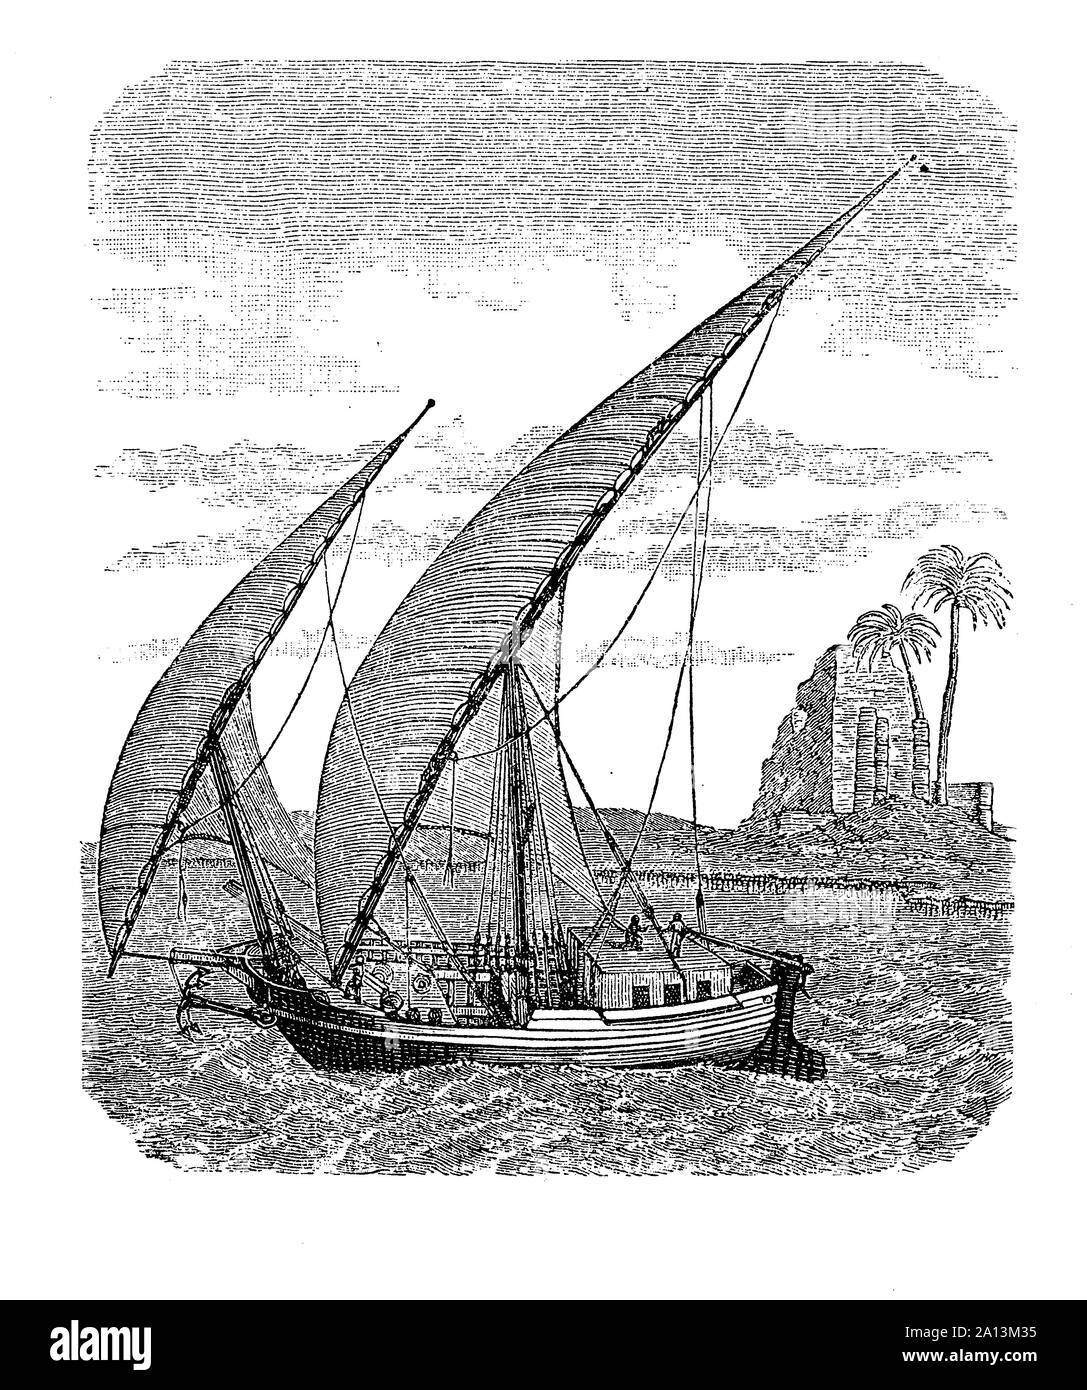 1900 gréé en latines, bateau traditionnel égyptien lght, petit et maniable d'une croisière sur la rivière du Nil, 17e siècle Banque D'Images